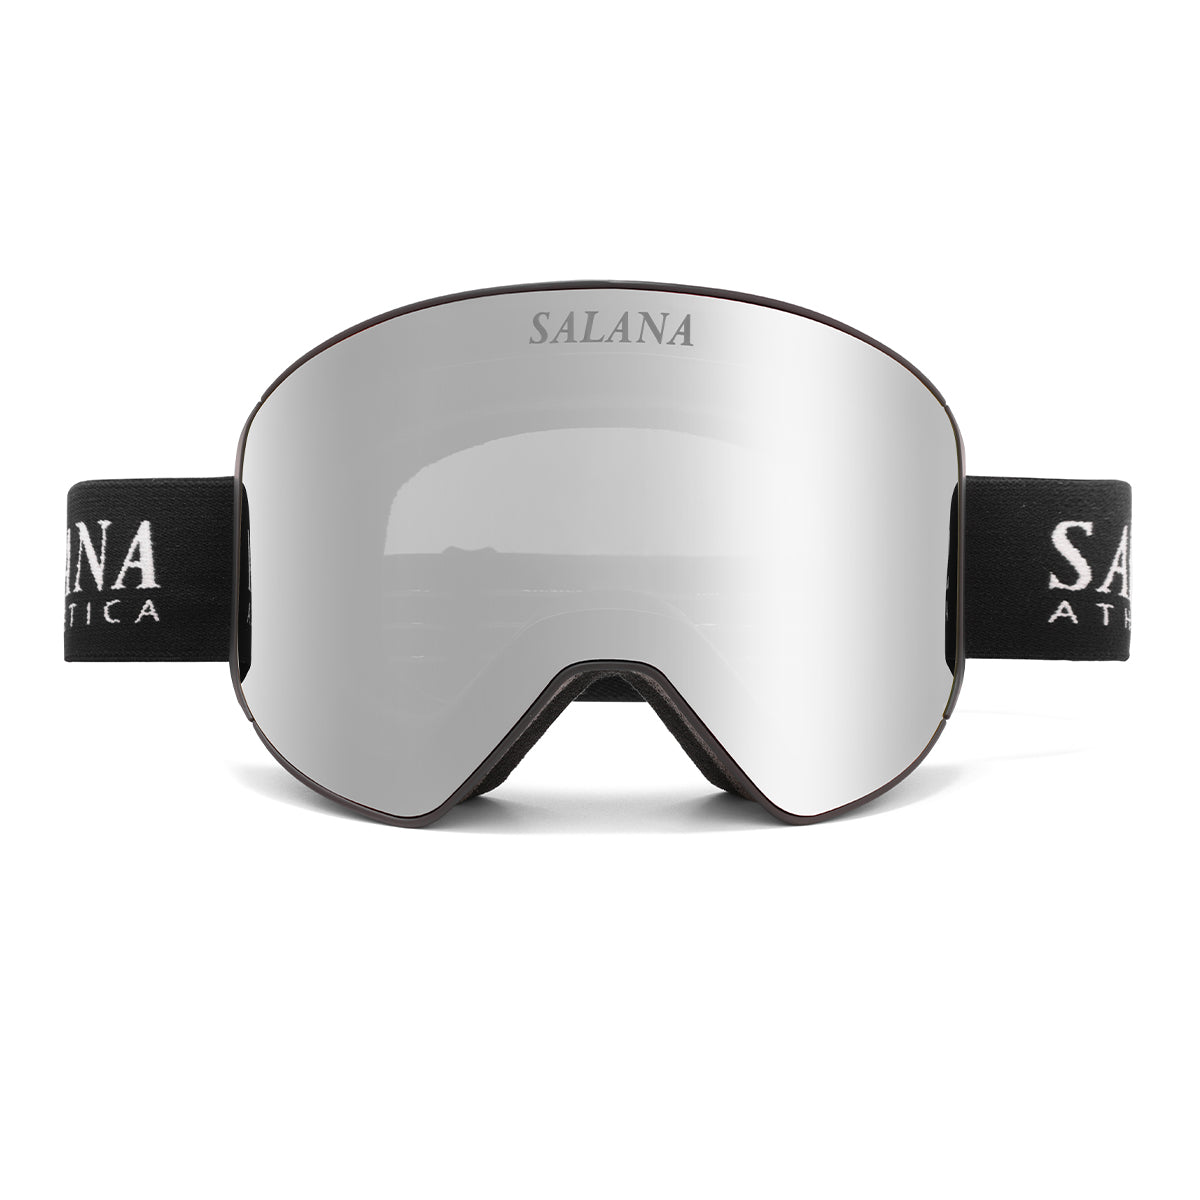 Salana premium mirrored silver ski snowboard goggles